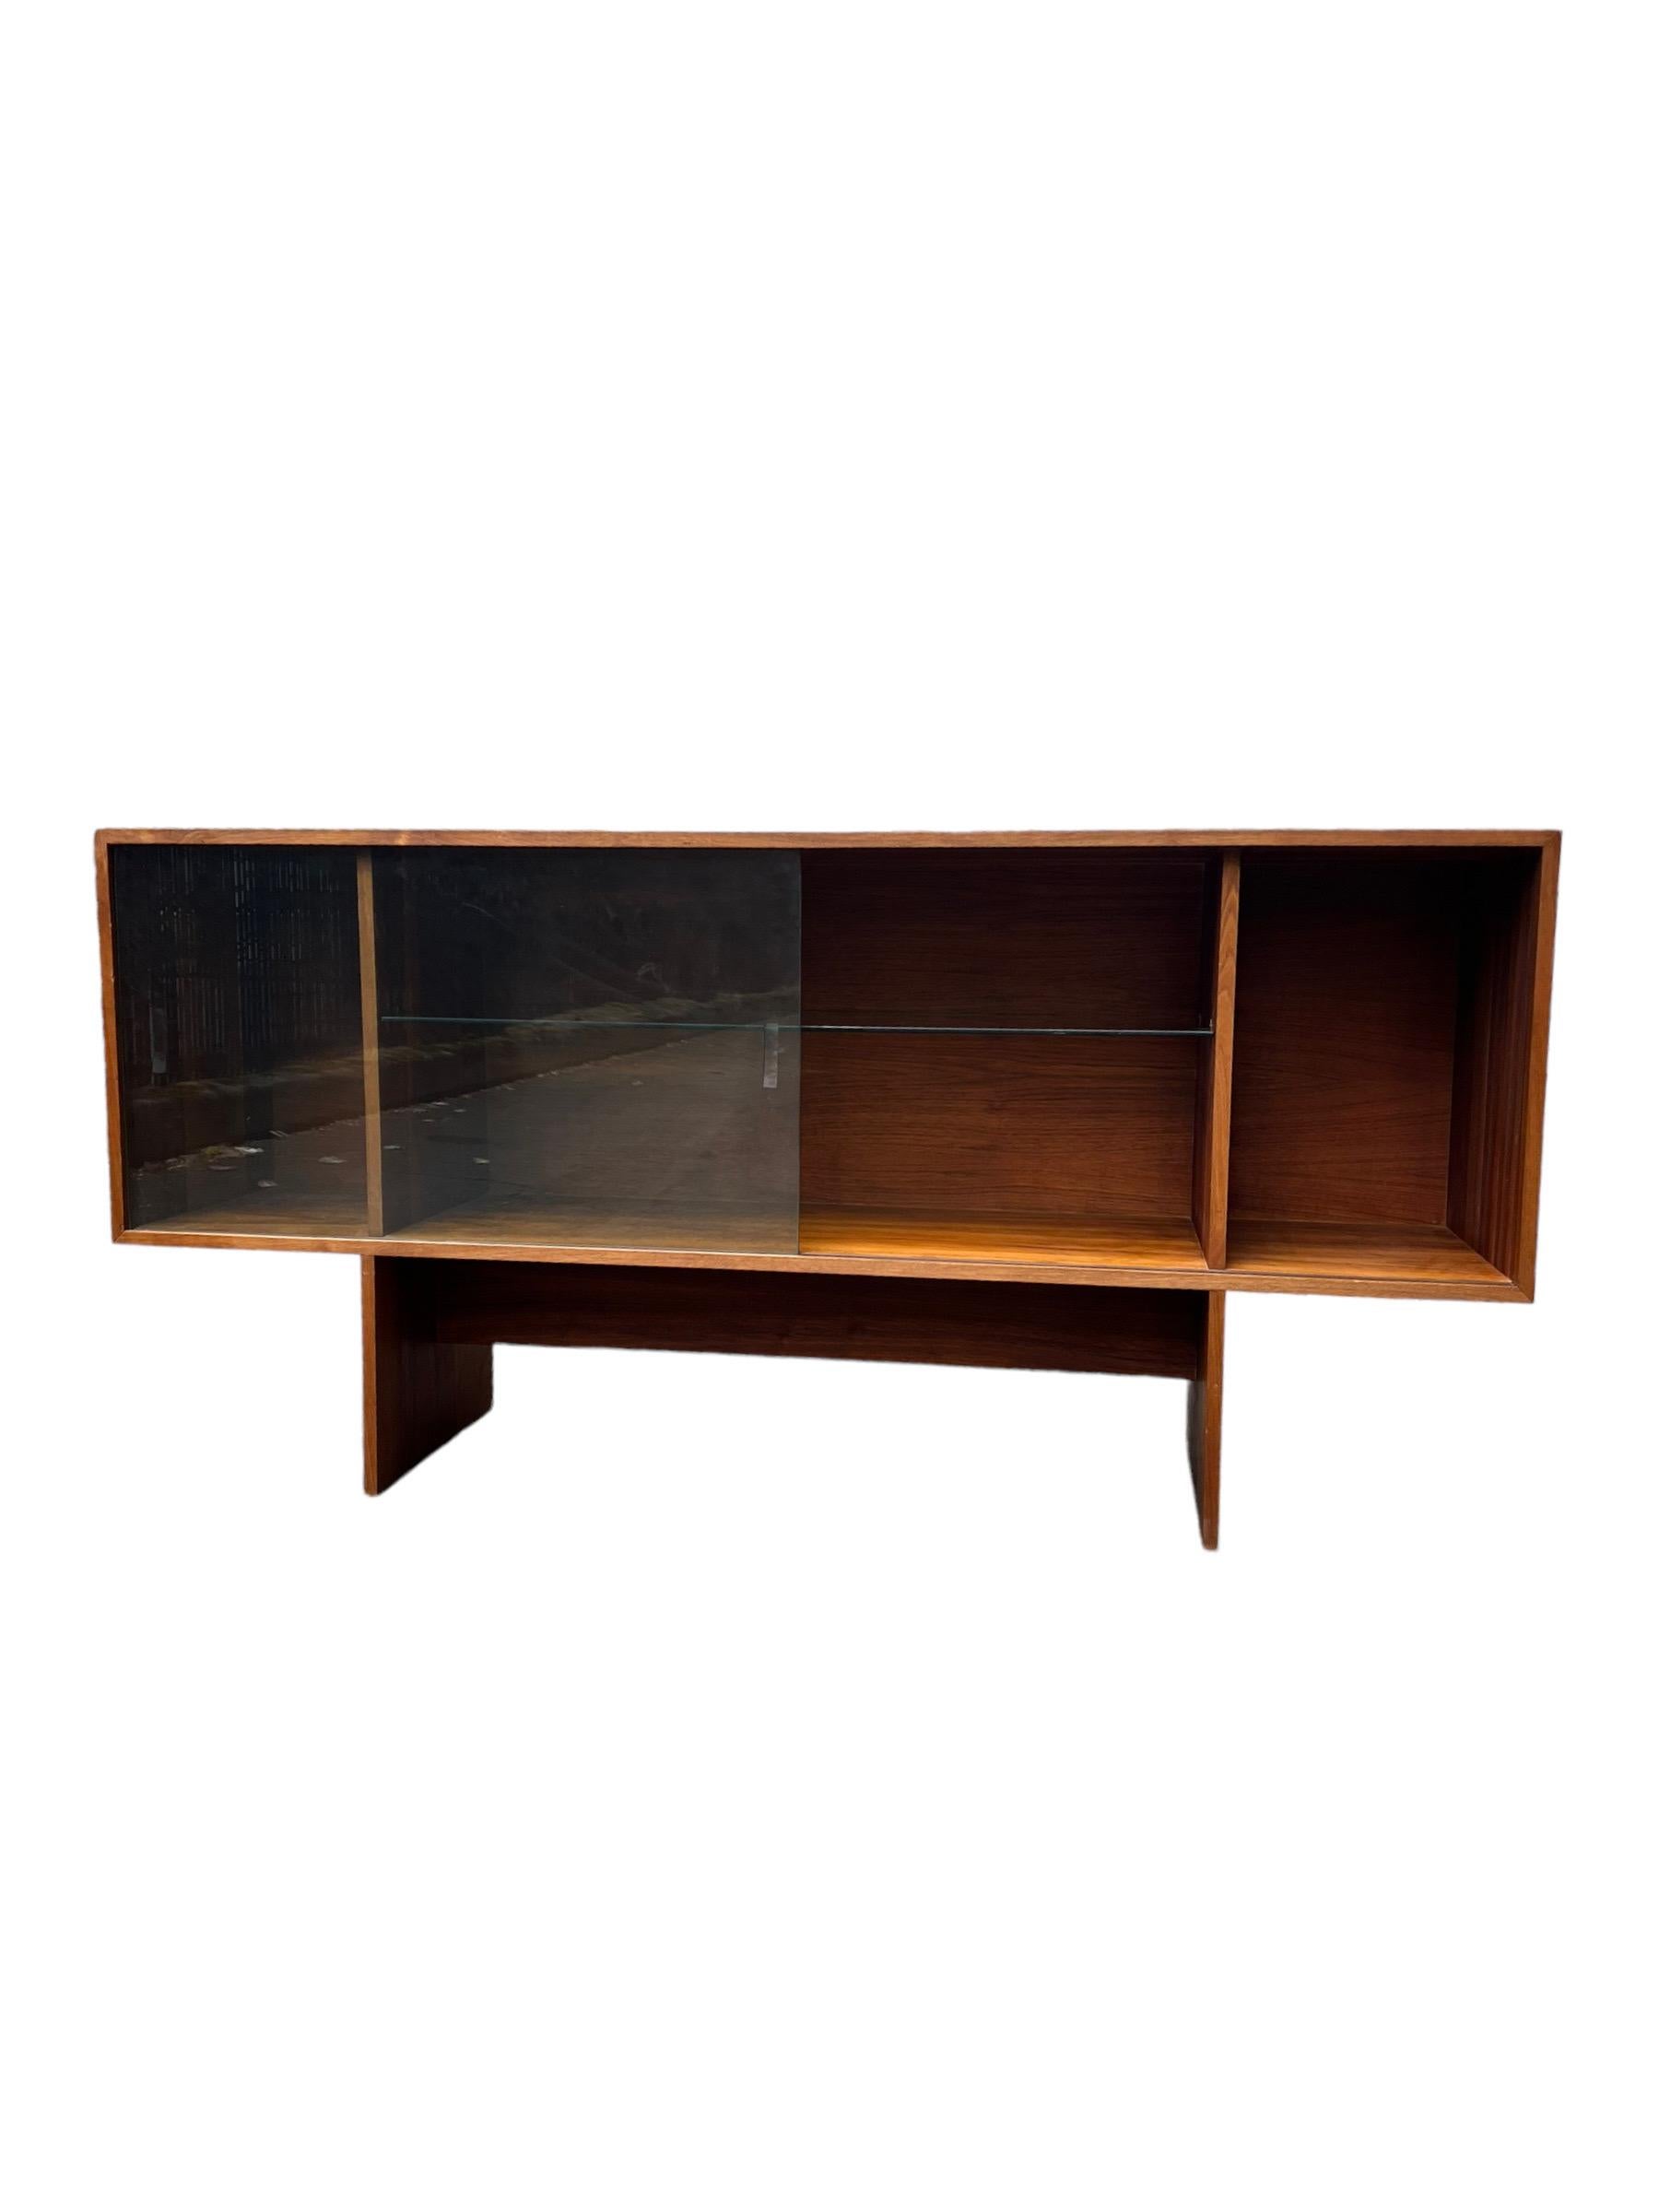 Vintage Mid Century Modern Walnut Book Shelf Display Cabinet Adjustable Shelf (étagère à livres en bois de noyer)

Dimensions. 66 L ; 15 1/2 P ; 32 H
Intérieur (à droite). 12 L ; 14 P ; 18 1/2 H
Intérieur (centre). 39 L ; 14 P ; 18 1/2 H
Intérieur (